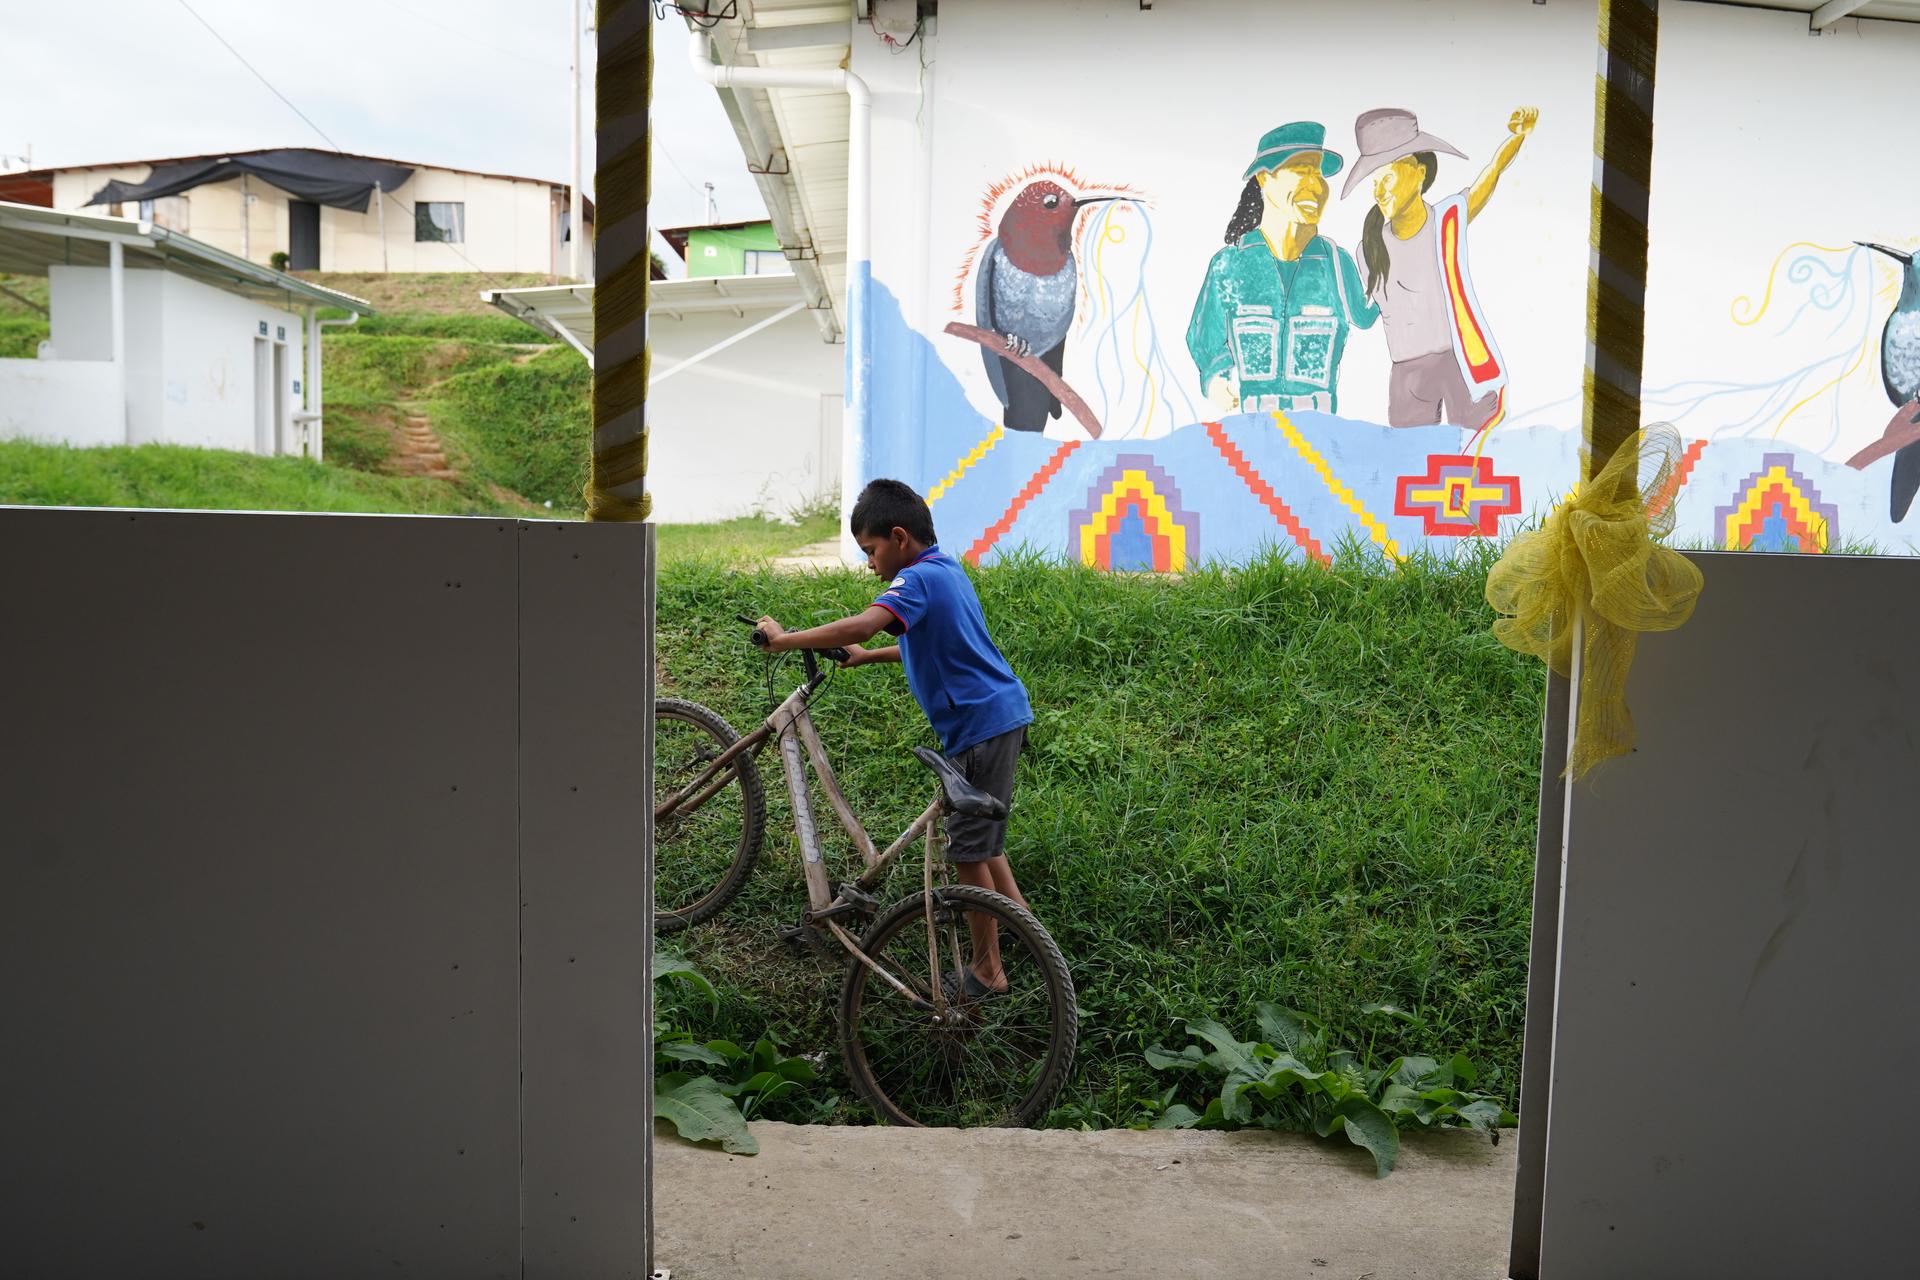 A boy rides his bike seen through a window near wall with mural